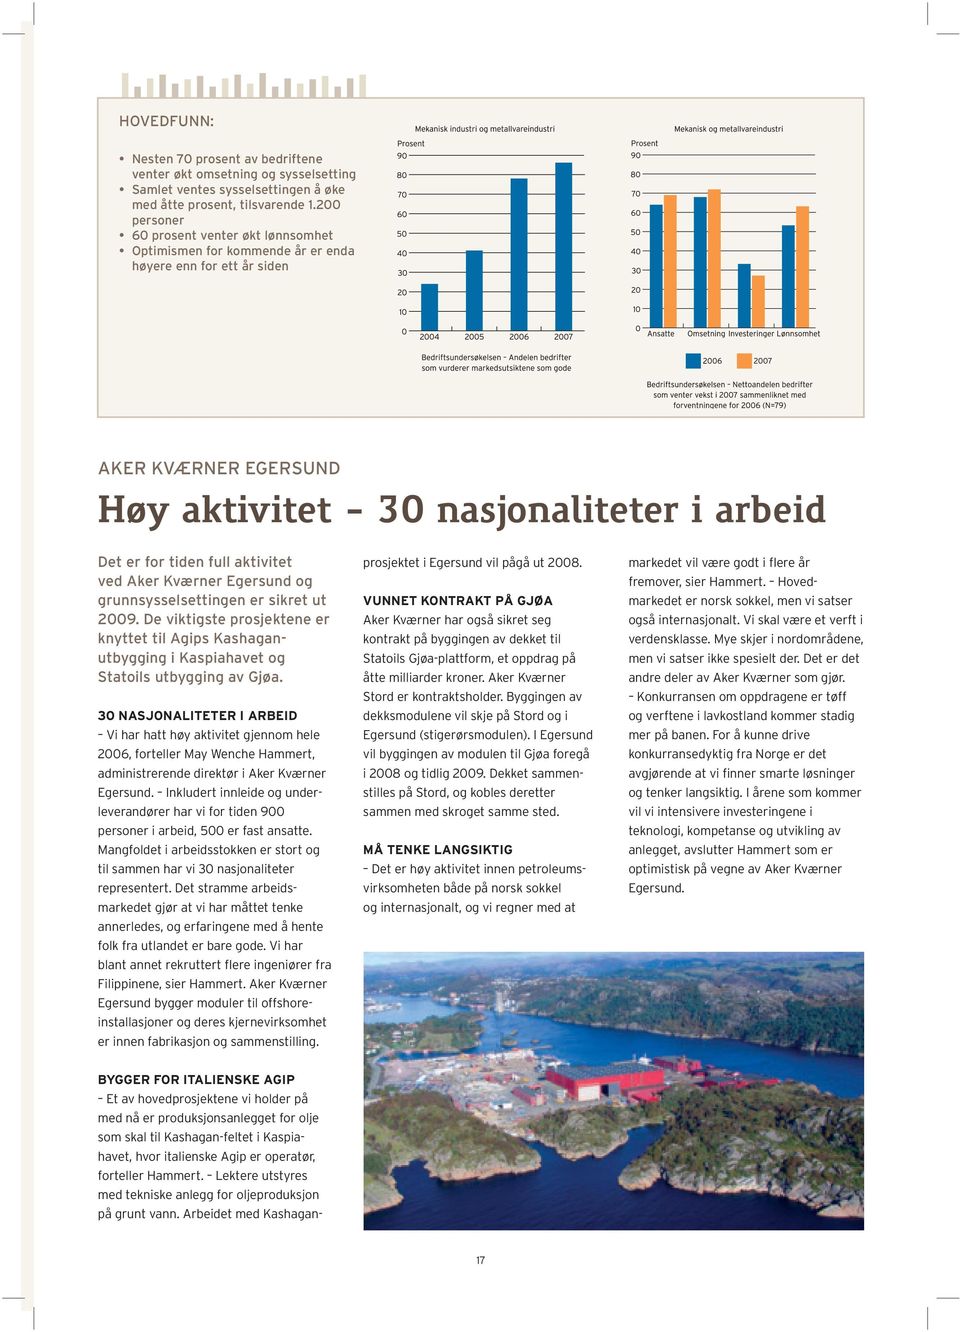 aktivitet ved Aker Kværner Egersund og grunnsysselsettingen er sikret ut 2009. De viktigste prosjektene er knyttet til Agips Kashaganutbygging i Kaspiahavet og Statoils utbygging av Gjøa.